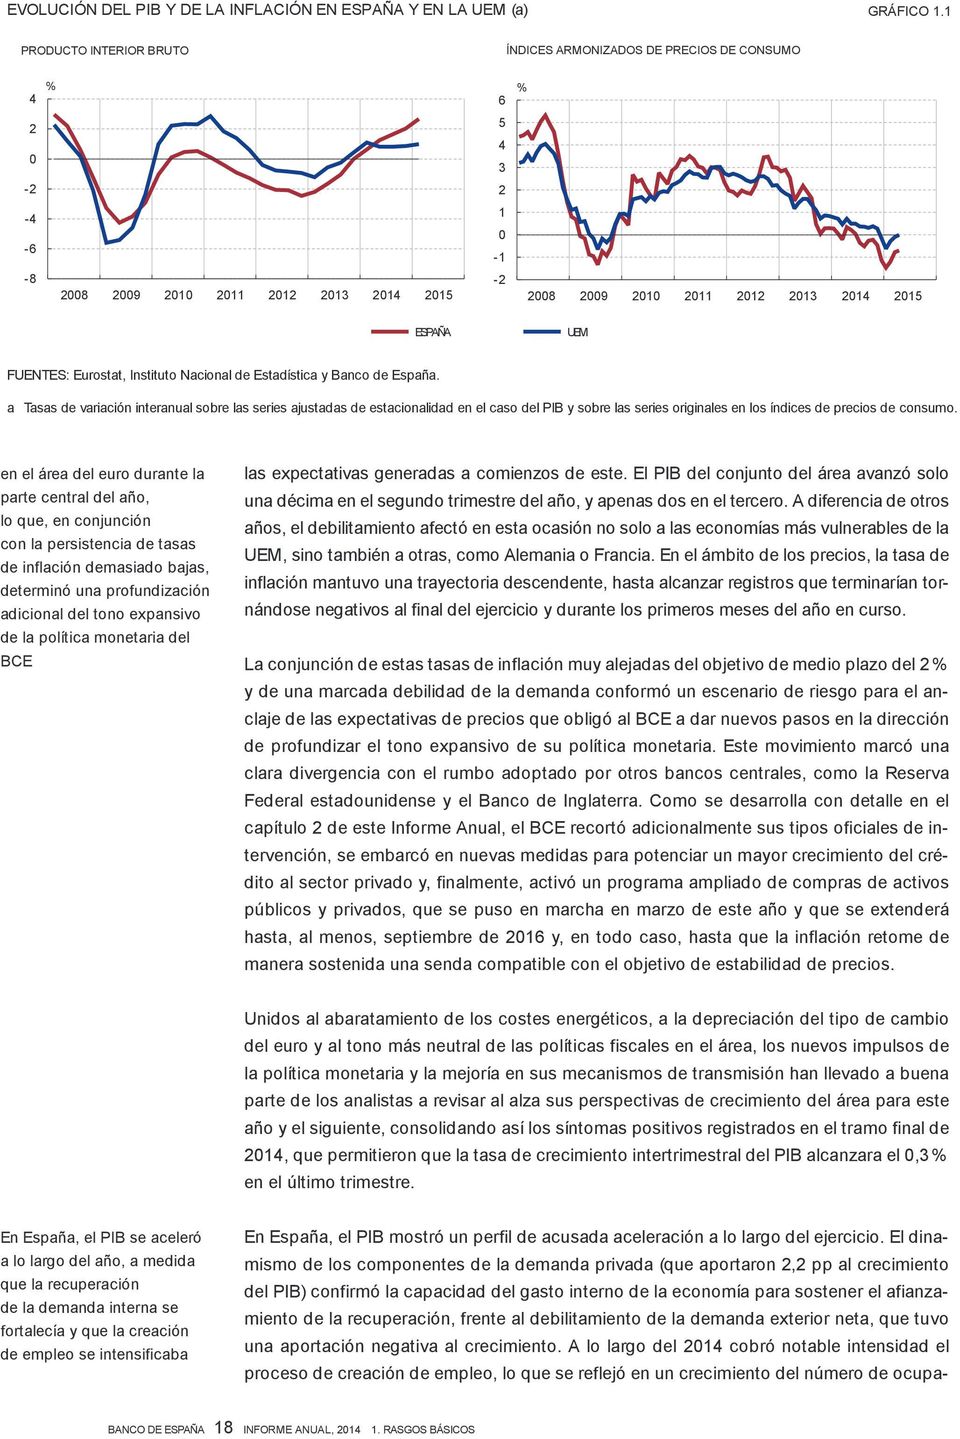 FUENTES: Eurostat, Instituto Nacional de Estadística y Banco de España.